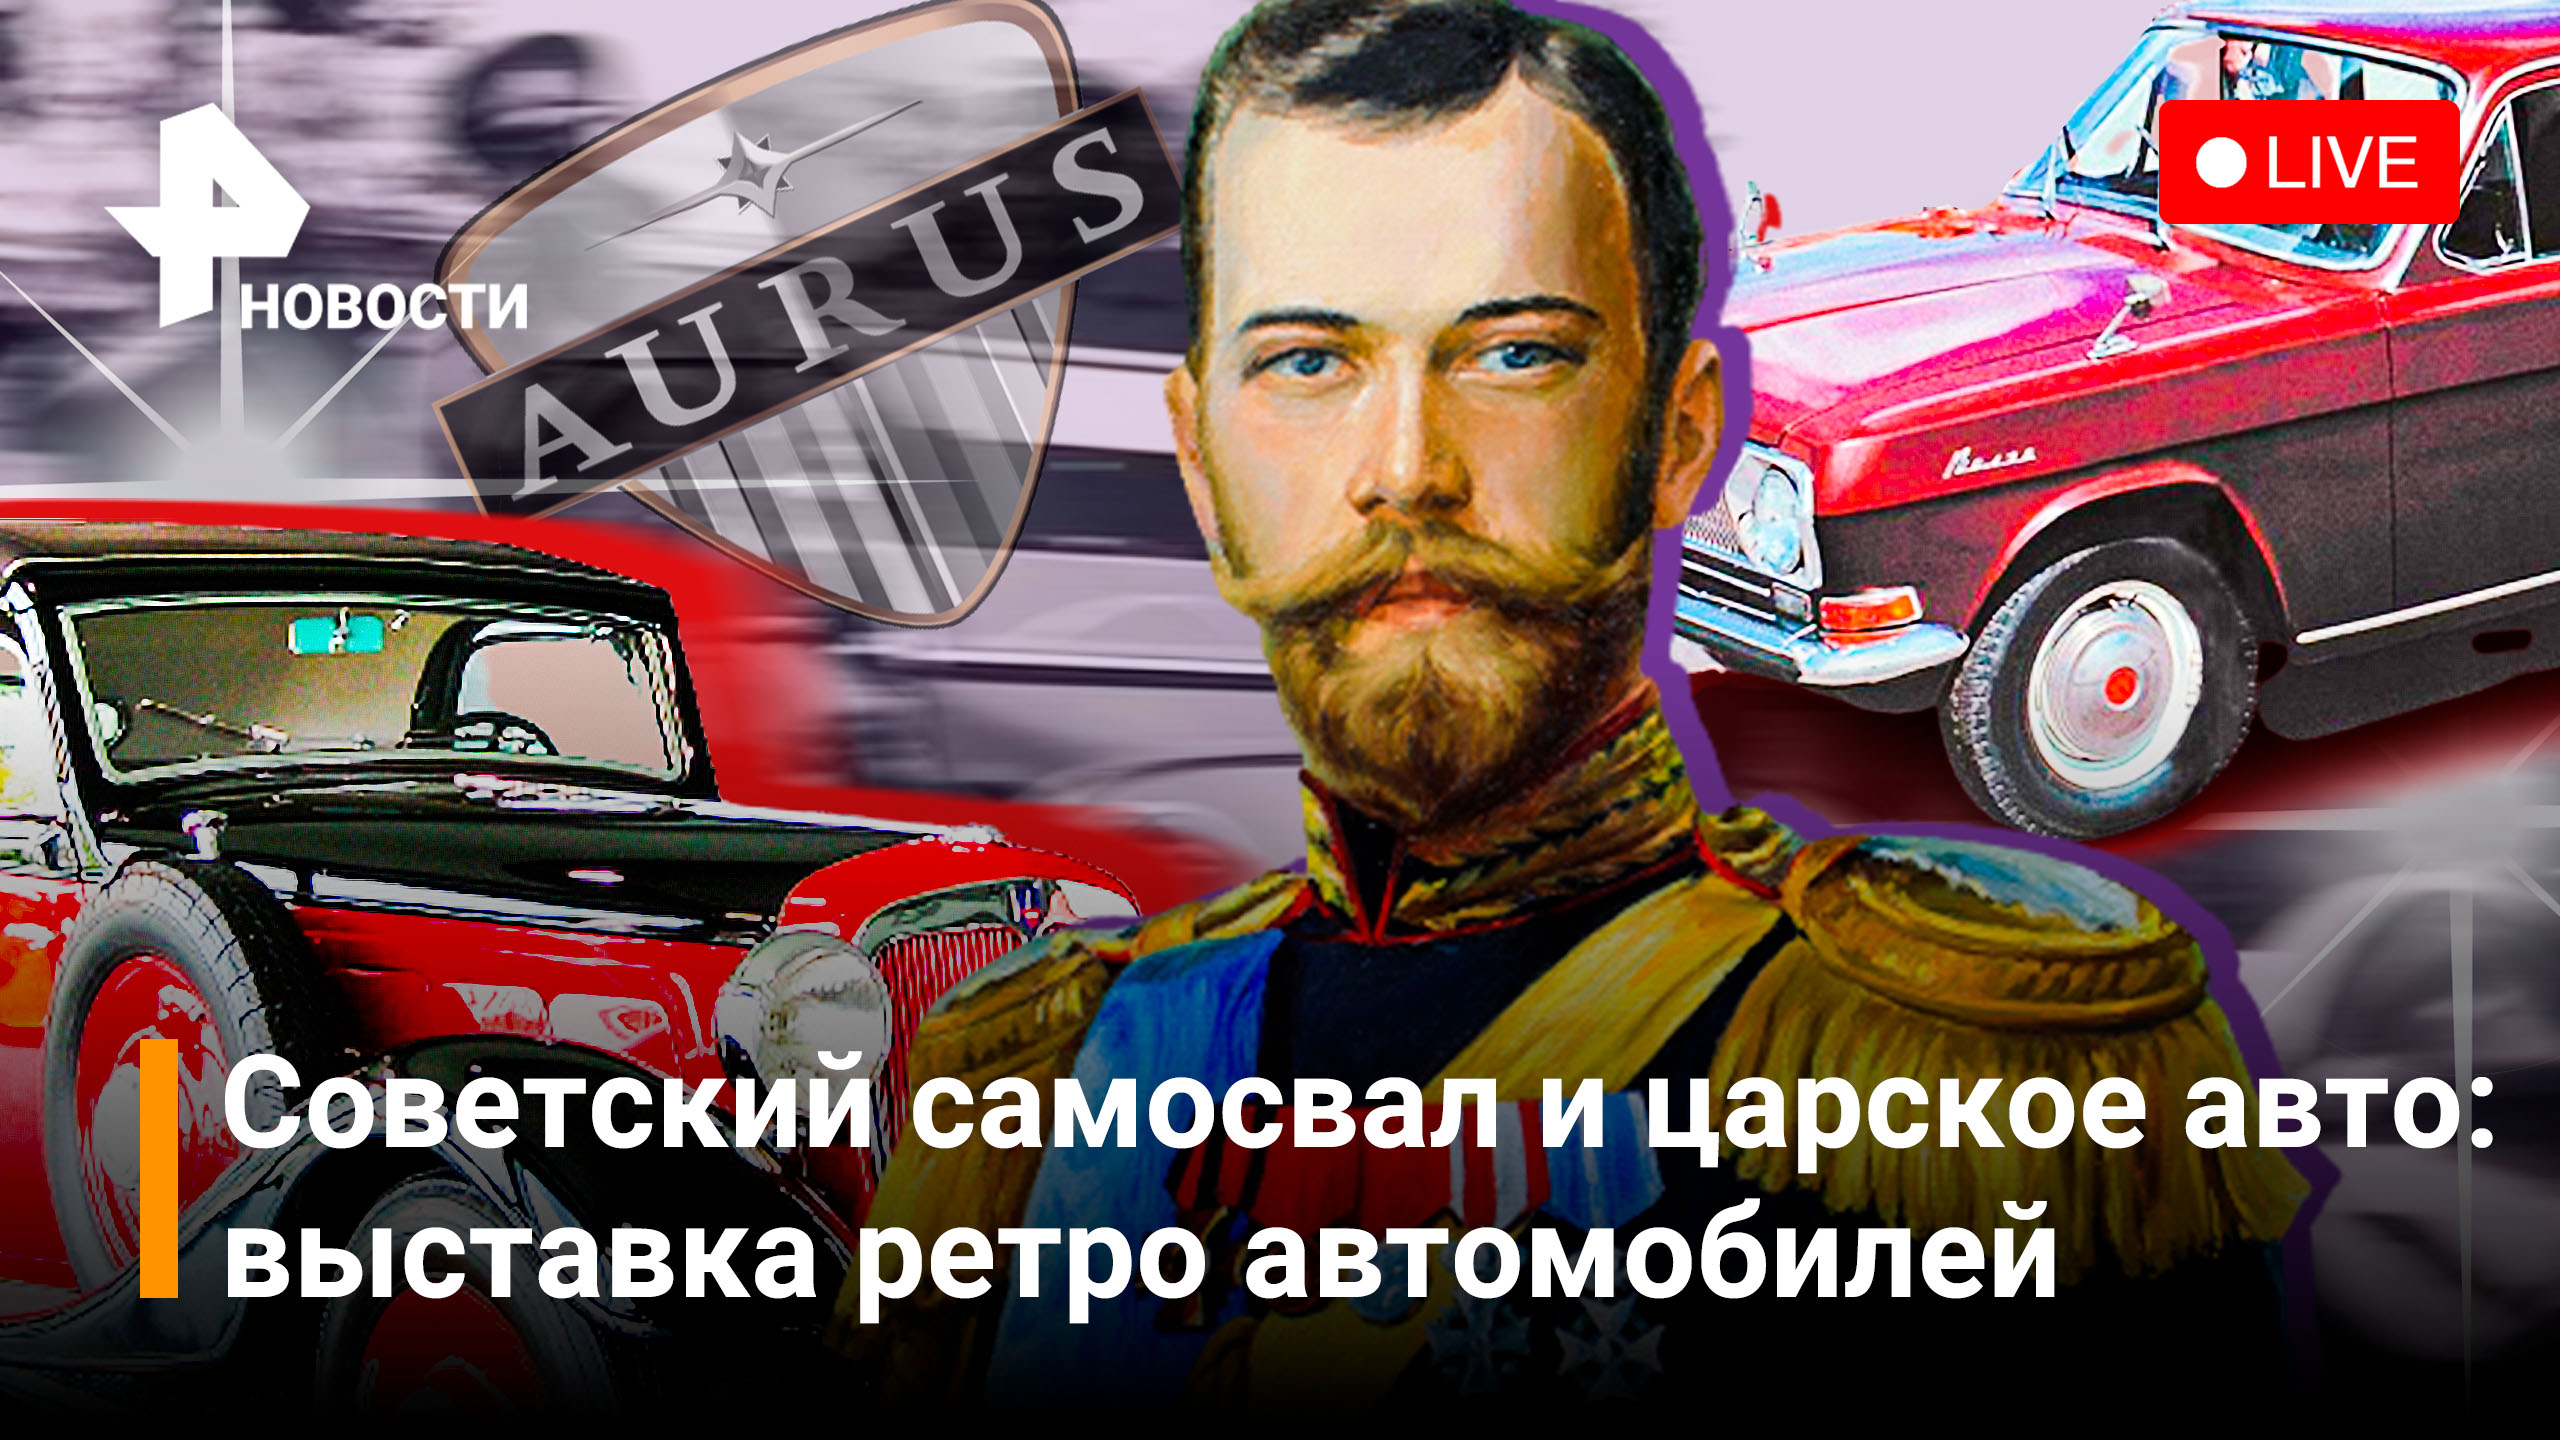 Выставка ретро автомобилей: премьера AURUS и любимых автомобилей Николая II. Прямая трансляция